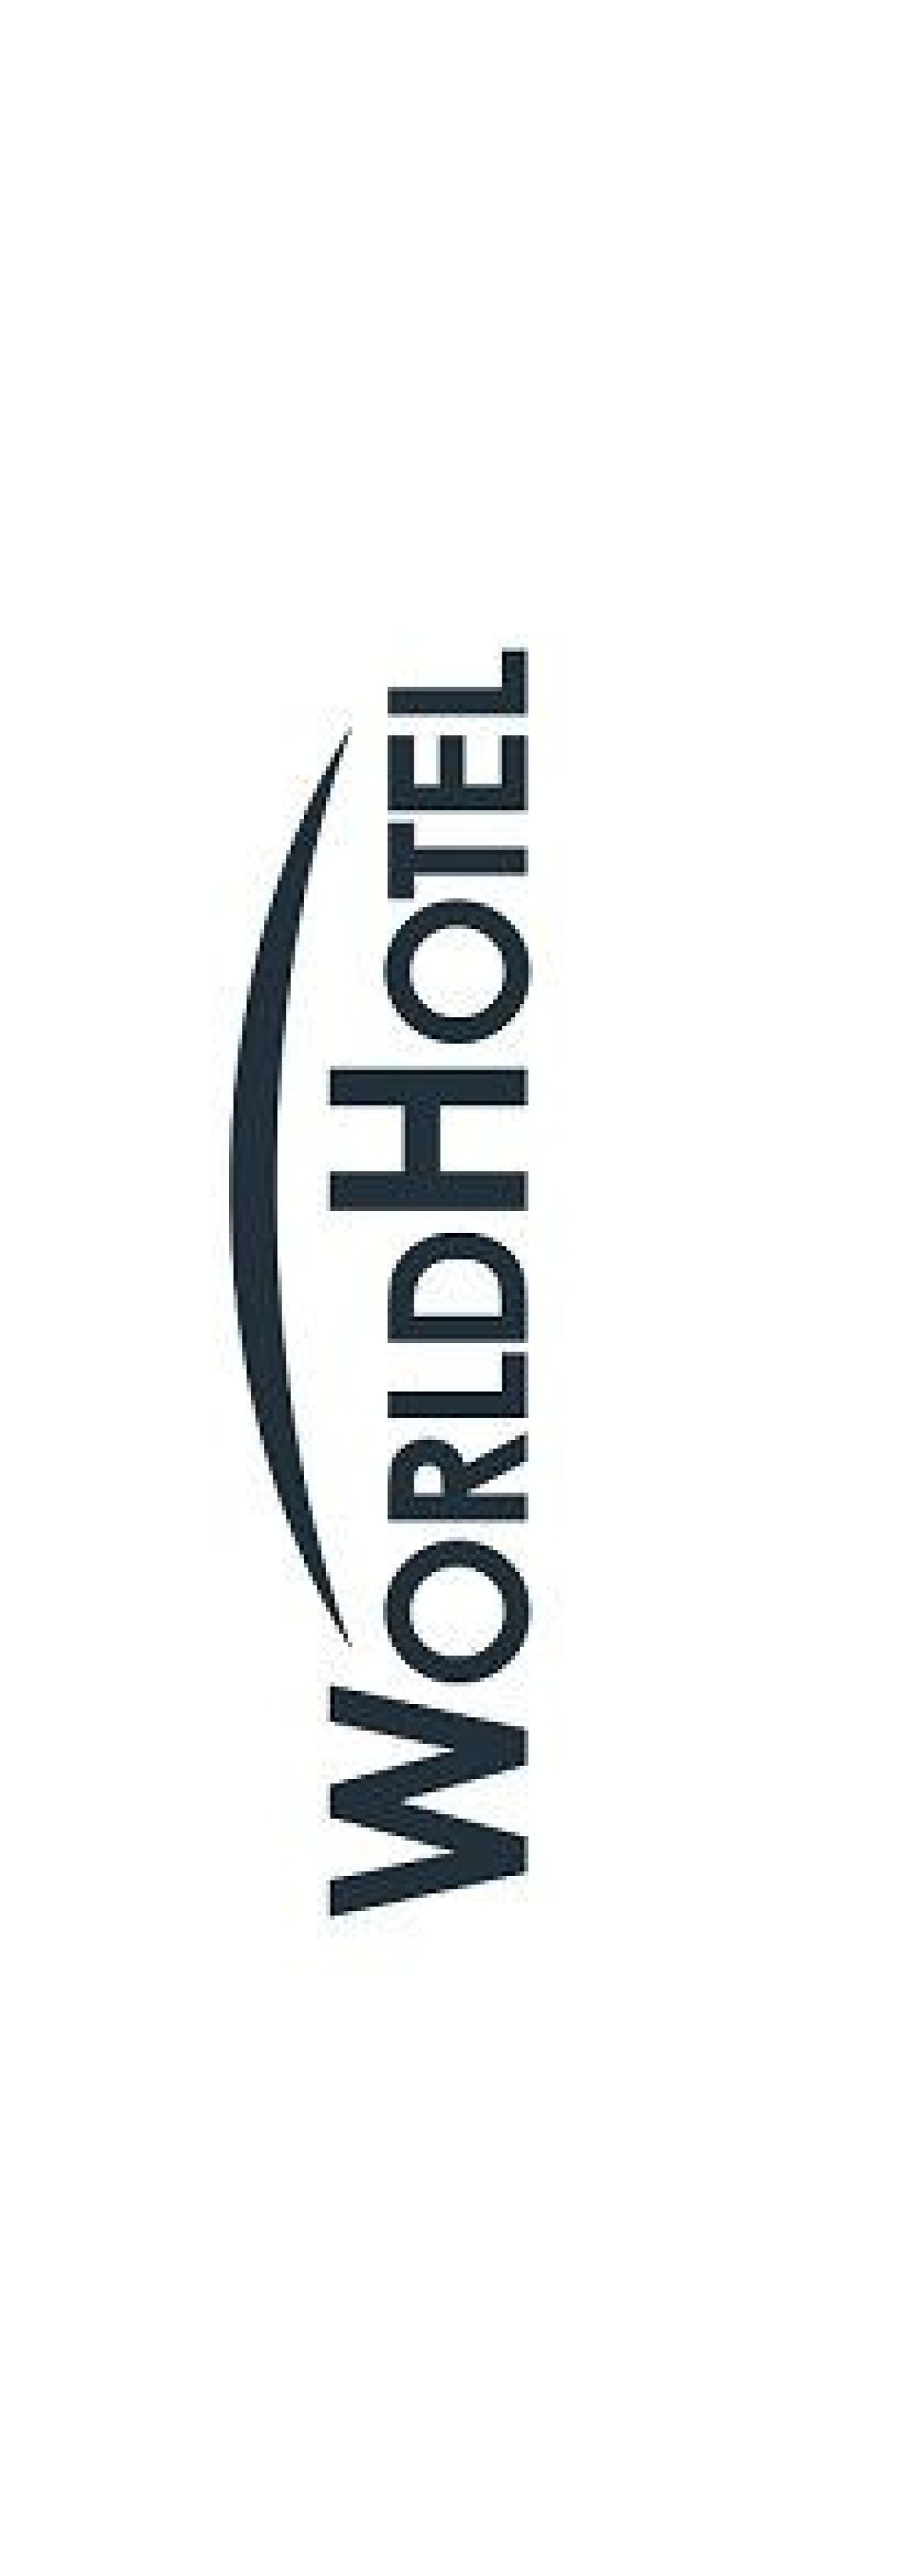 Targi WorldHotel - hotelarstwo w najlepszym wydaniu